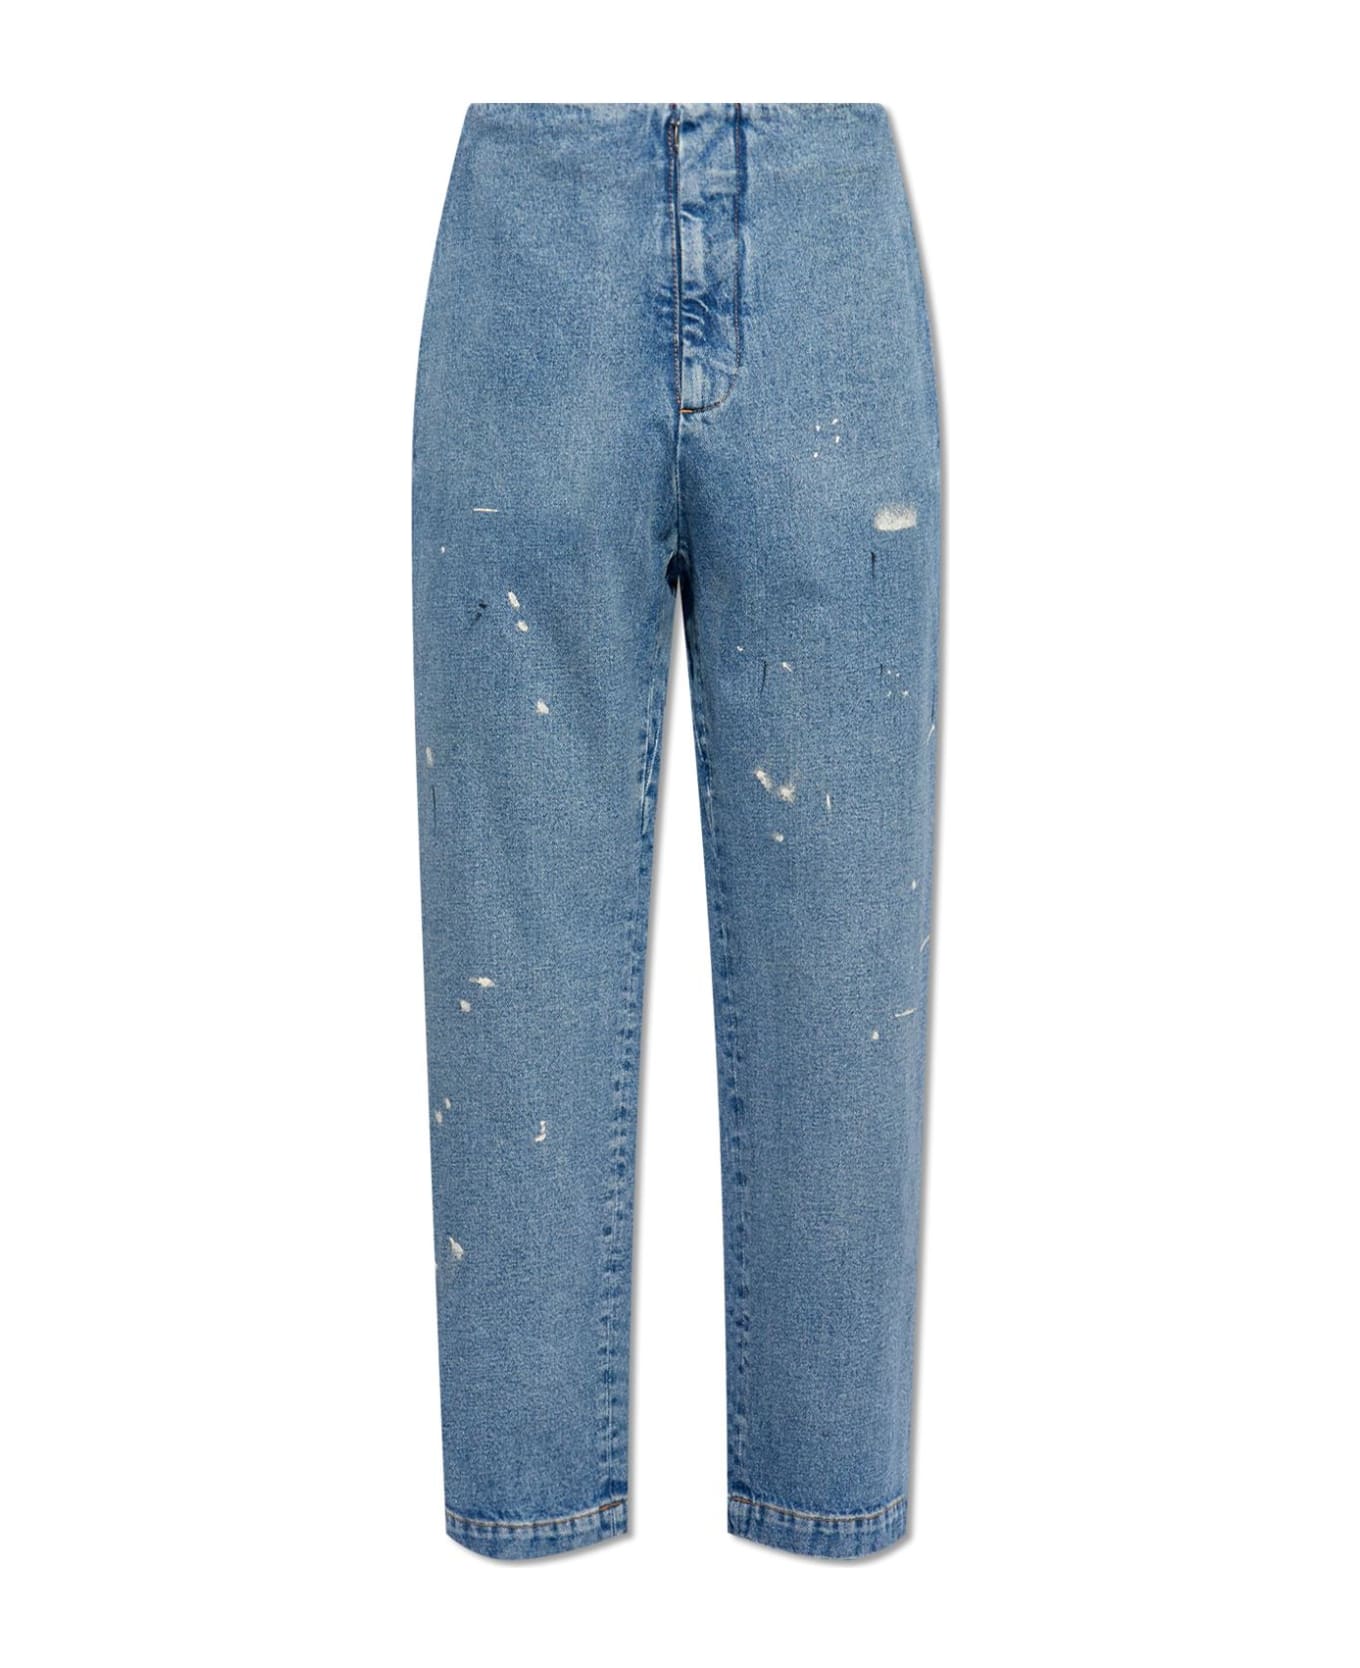 MM6 Maison Margiela Jeans With Paint Splatters - BLUE